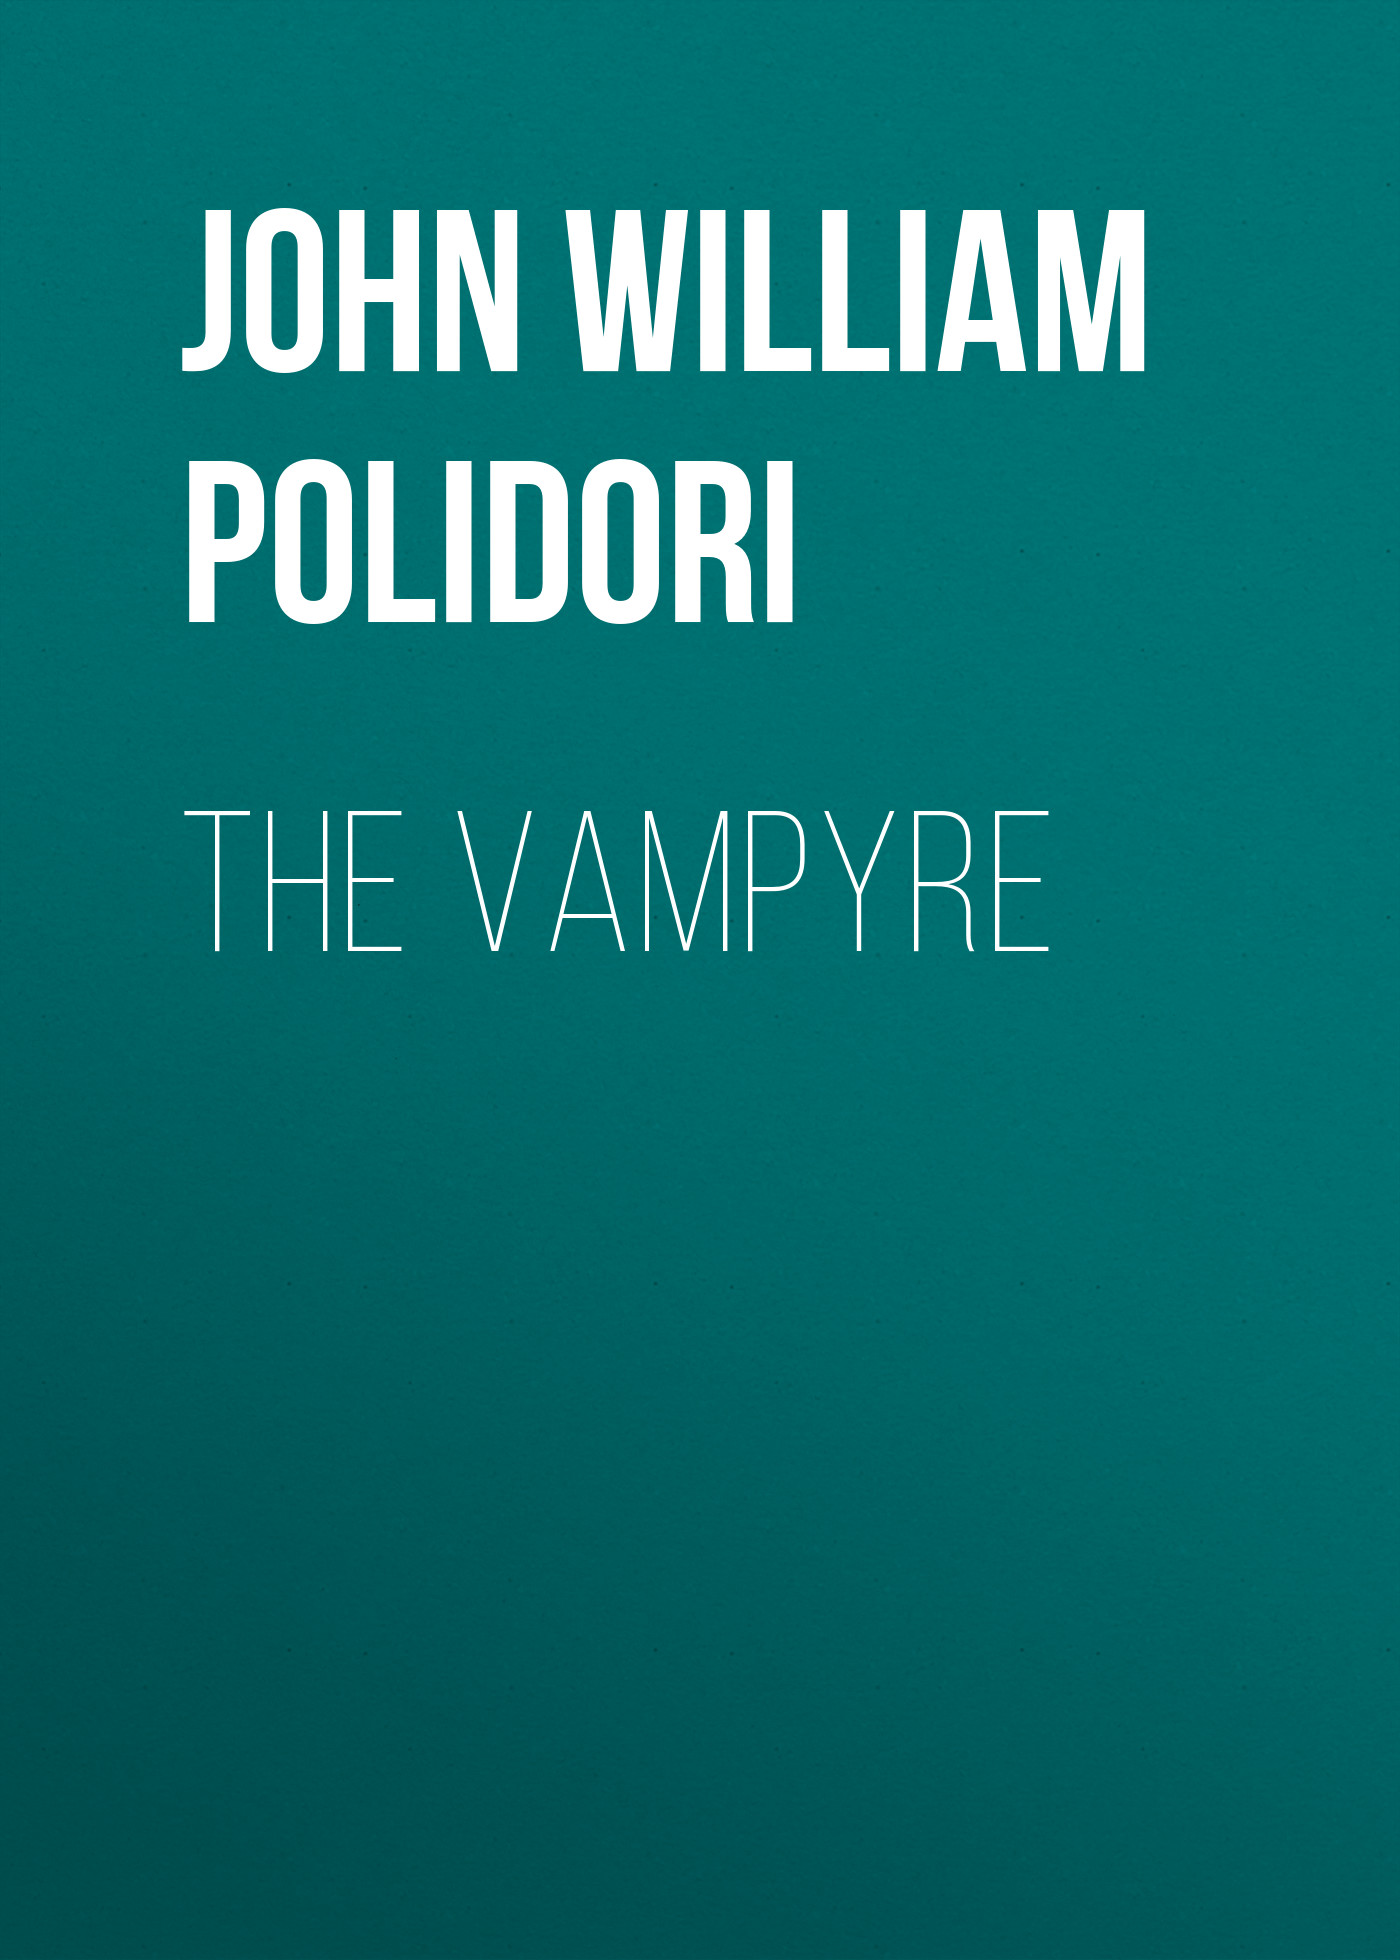 Книга The Vampyre из серии , созданная John William Polidori, может относится к жанру Литература 19 века, Ужасы и Мистика. Стоимость электронной книги The Vampyre с идентификатором 34841806 составляет 0 руб.